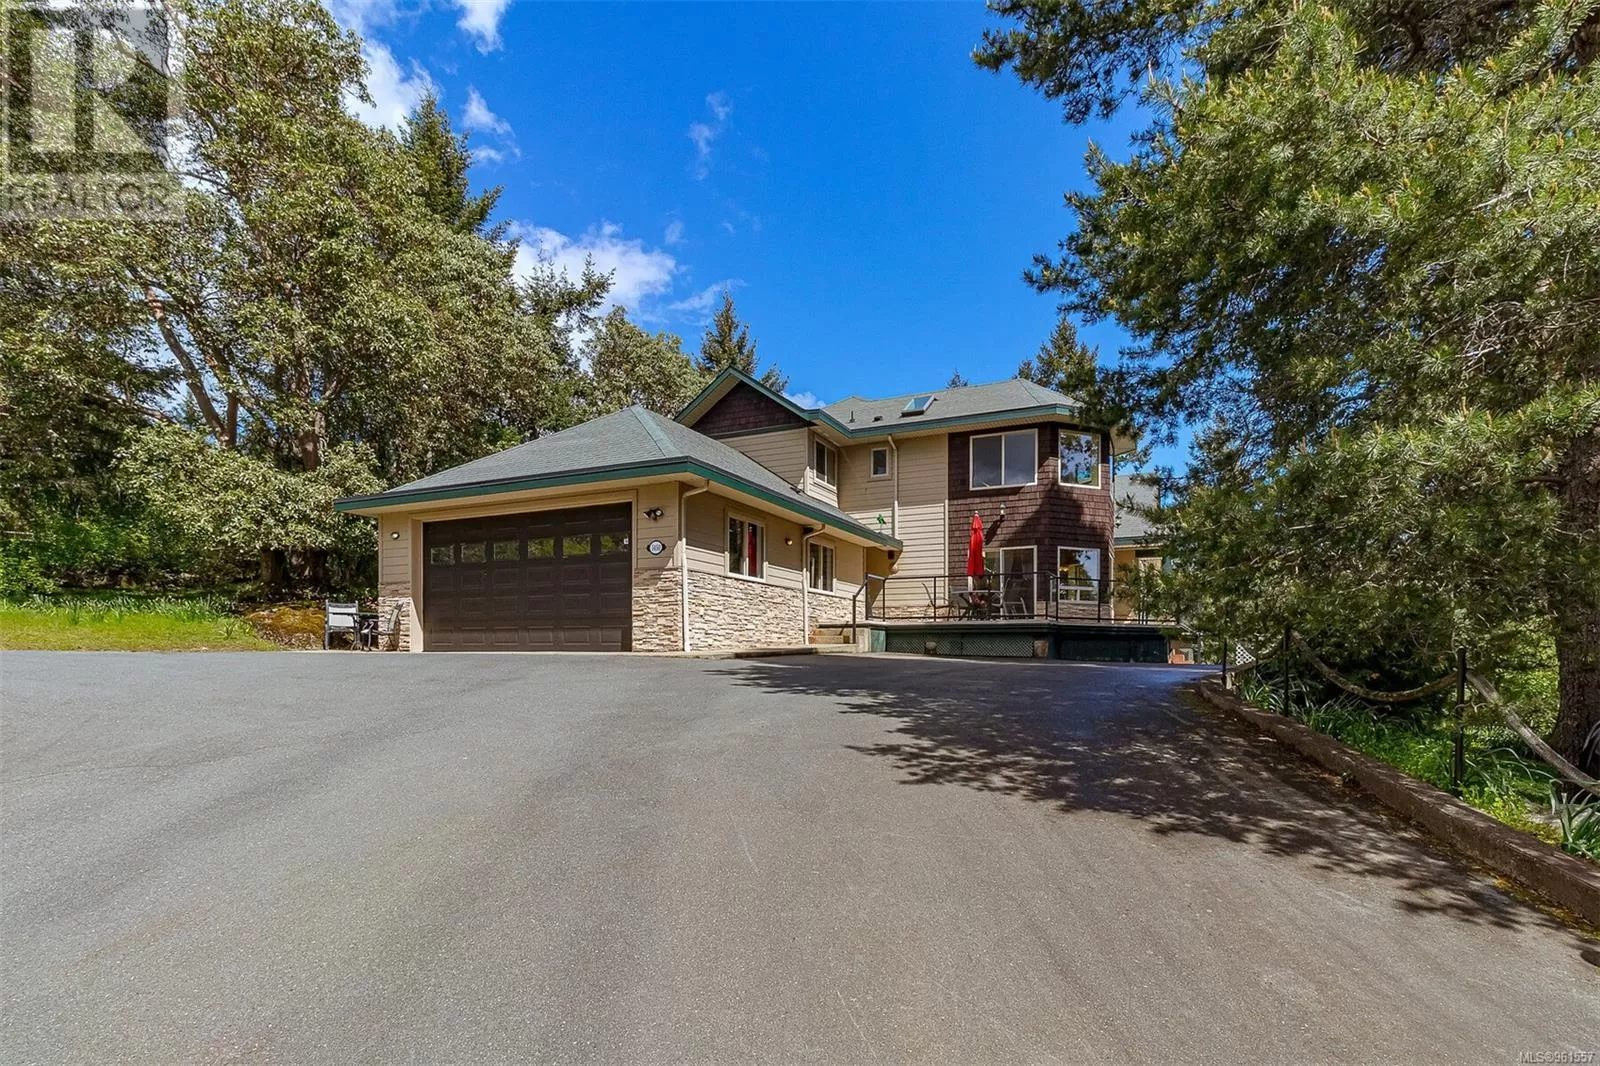 House for rent: 1450 White Pine Terr, Highlands, British Columbia V9B 6J3